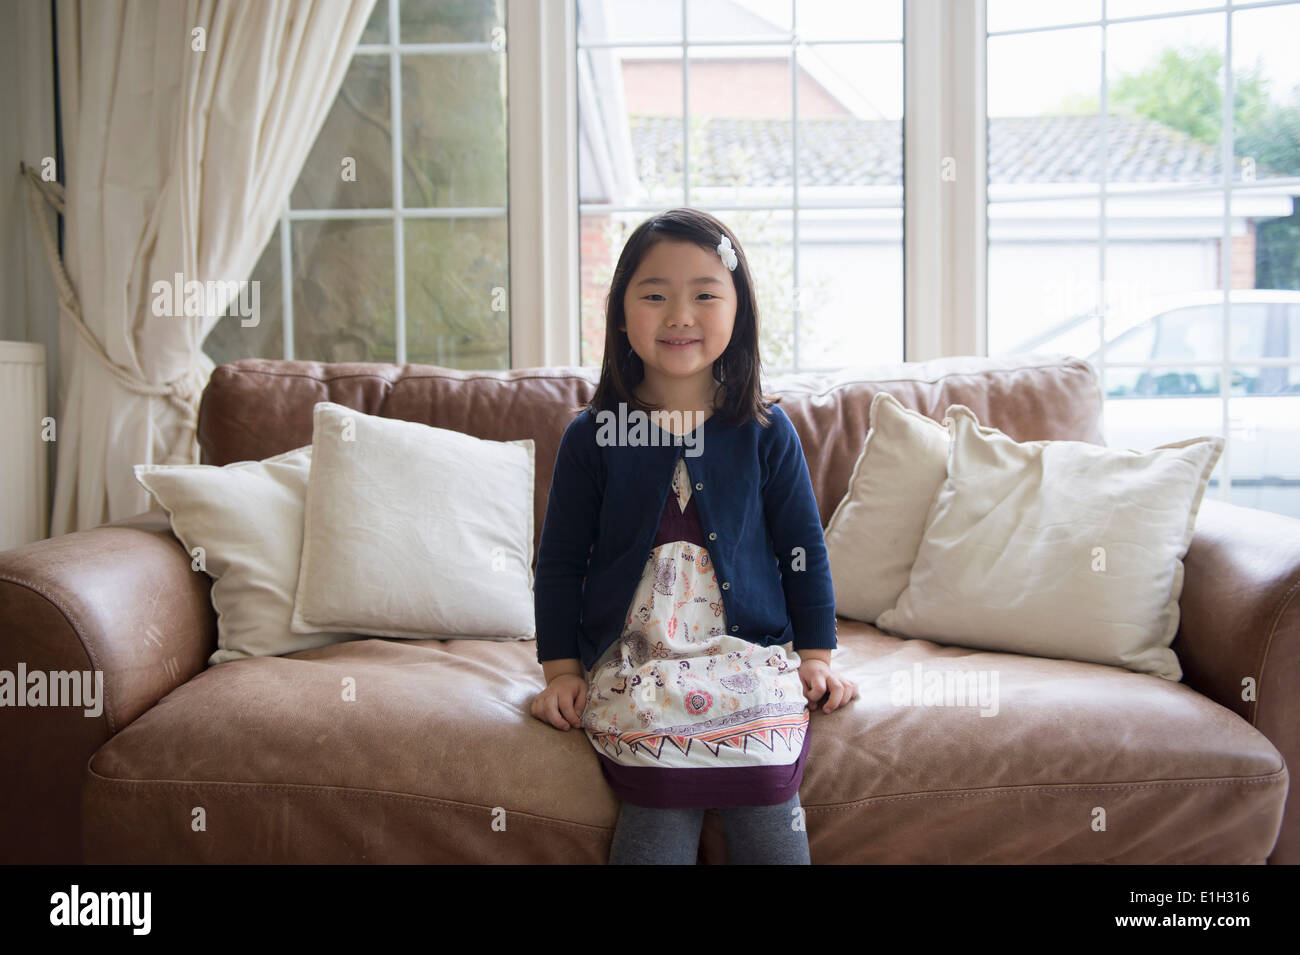 Porträt des jungen Mädchens auf sofa Stockfoto